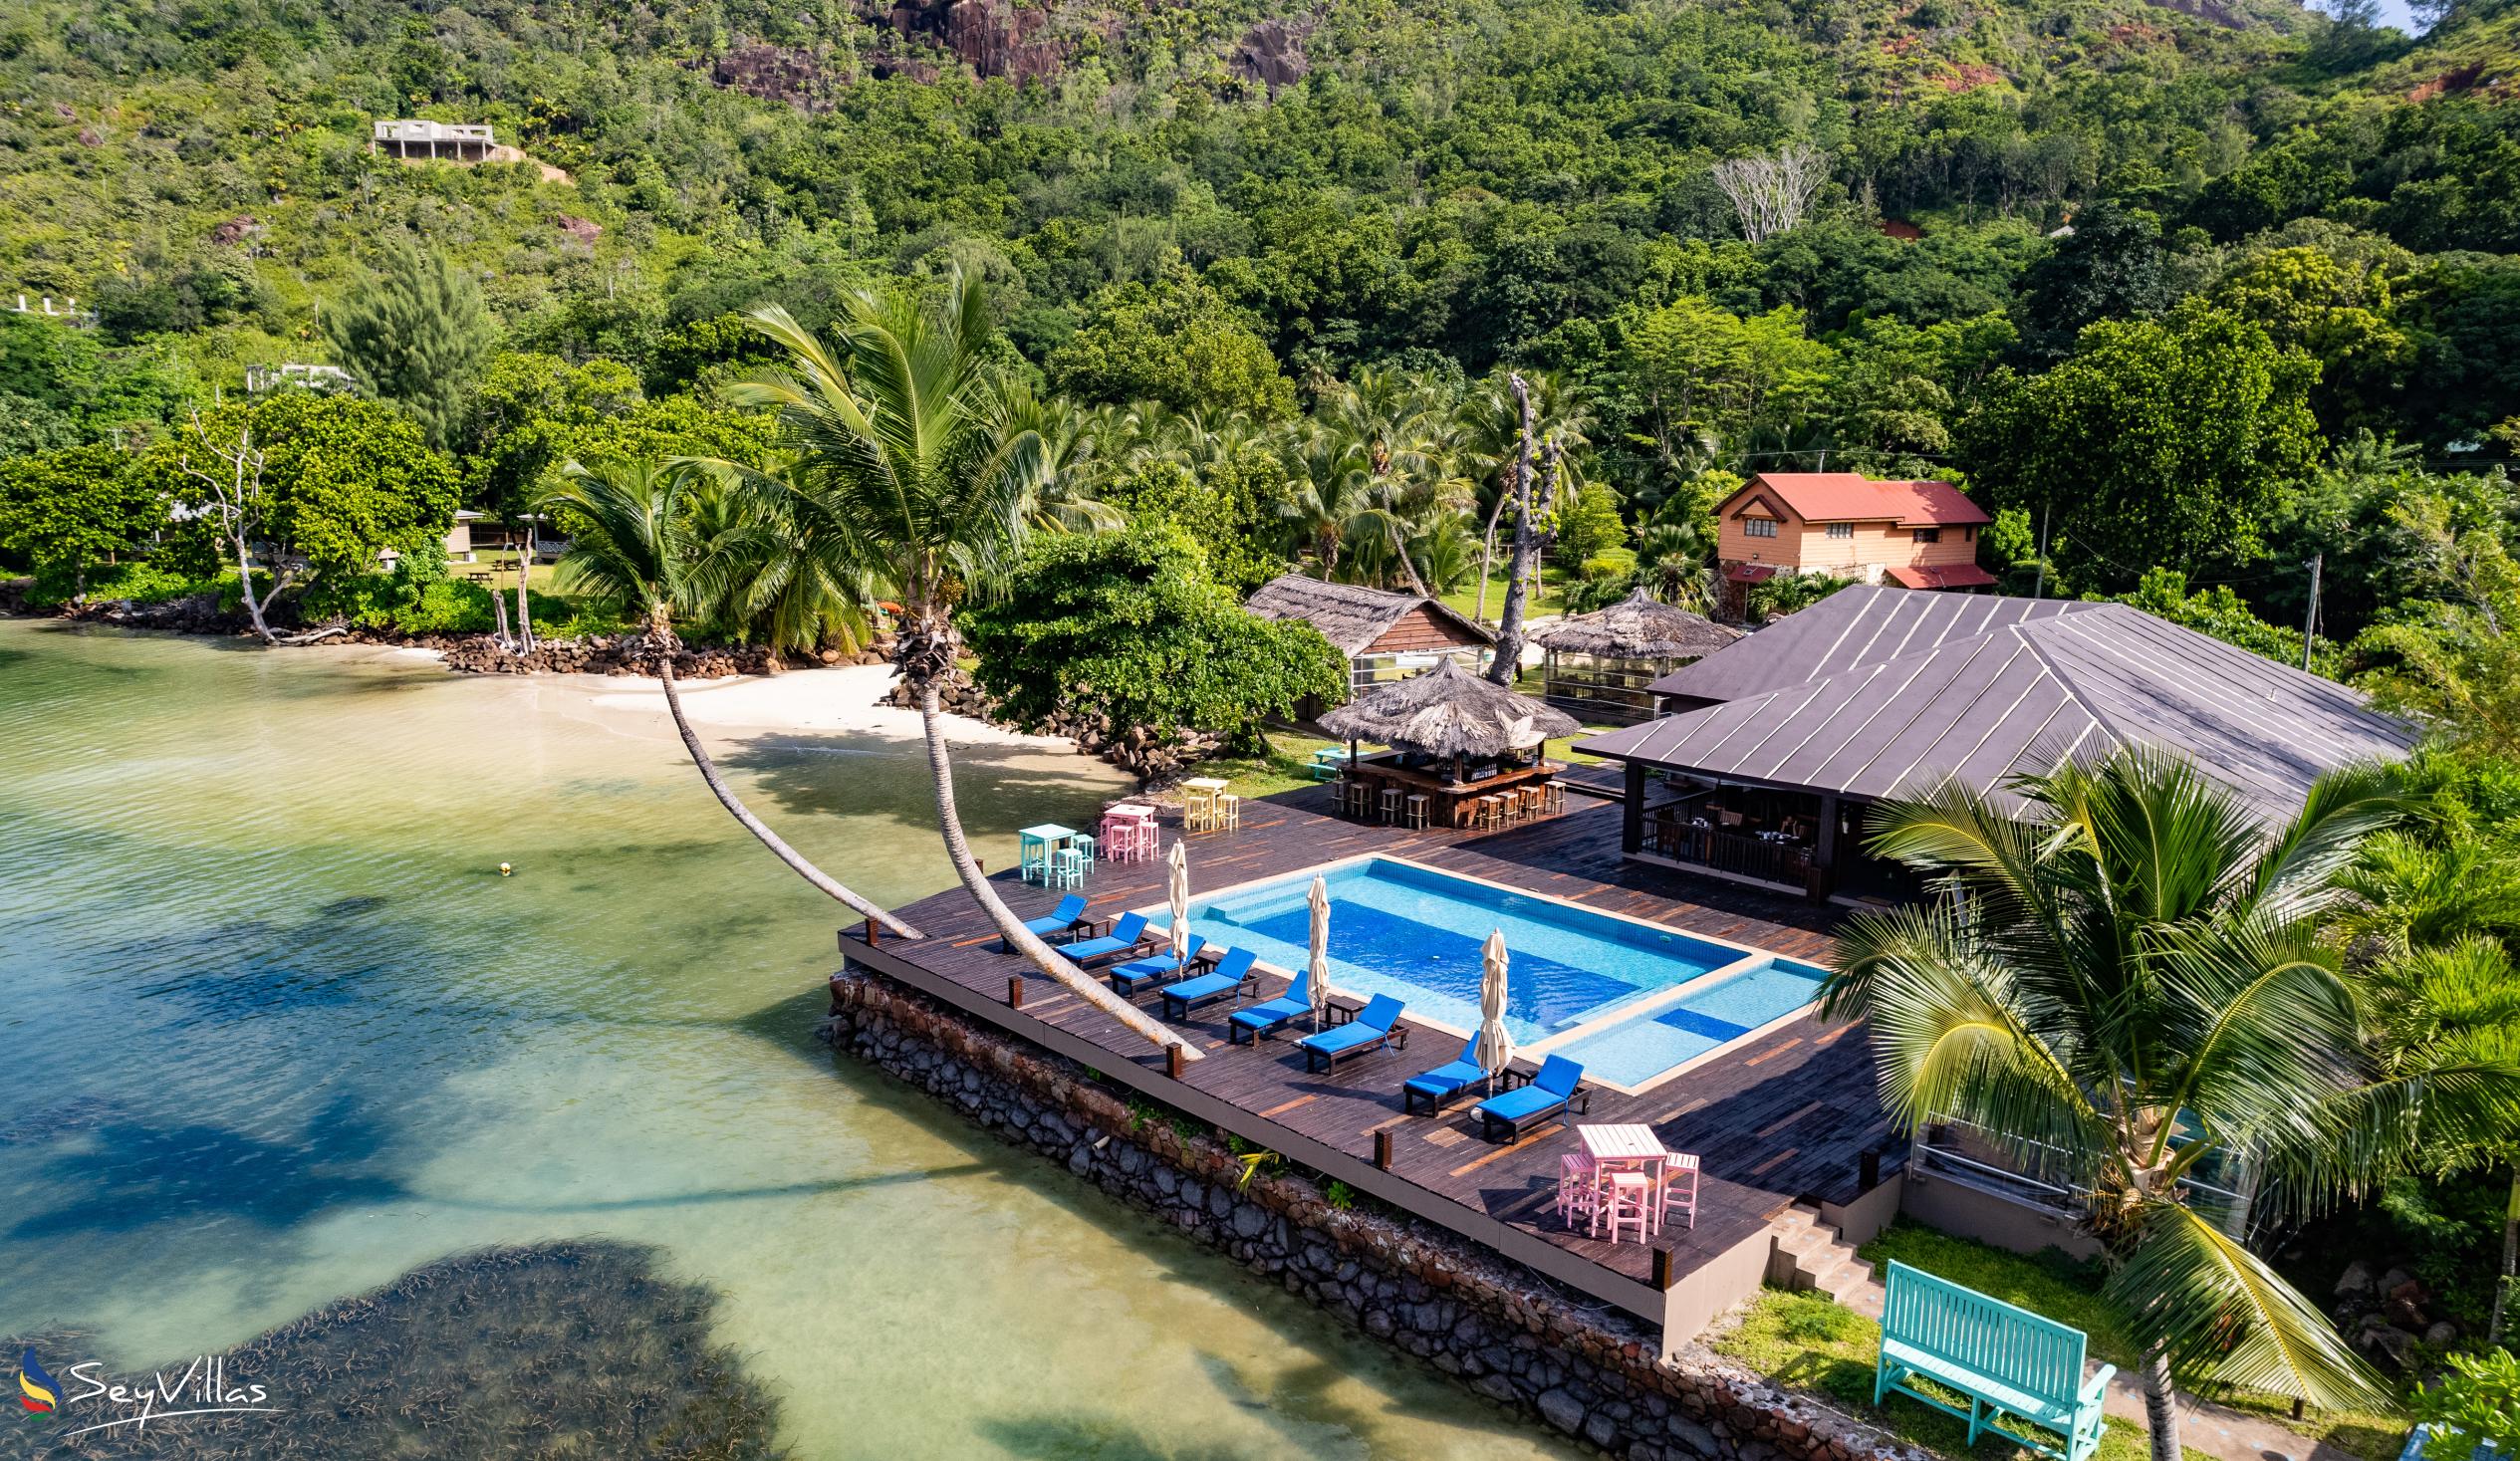 Photo 3: Le Vasseur La Buse Eco Resort - Outdoor area - Praslin (Seychelles)